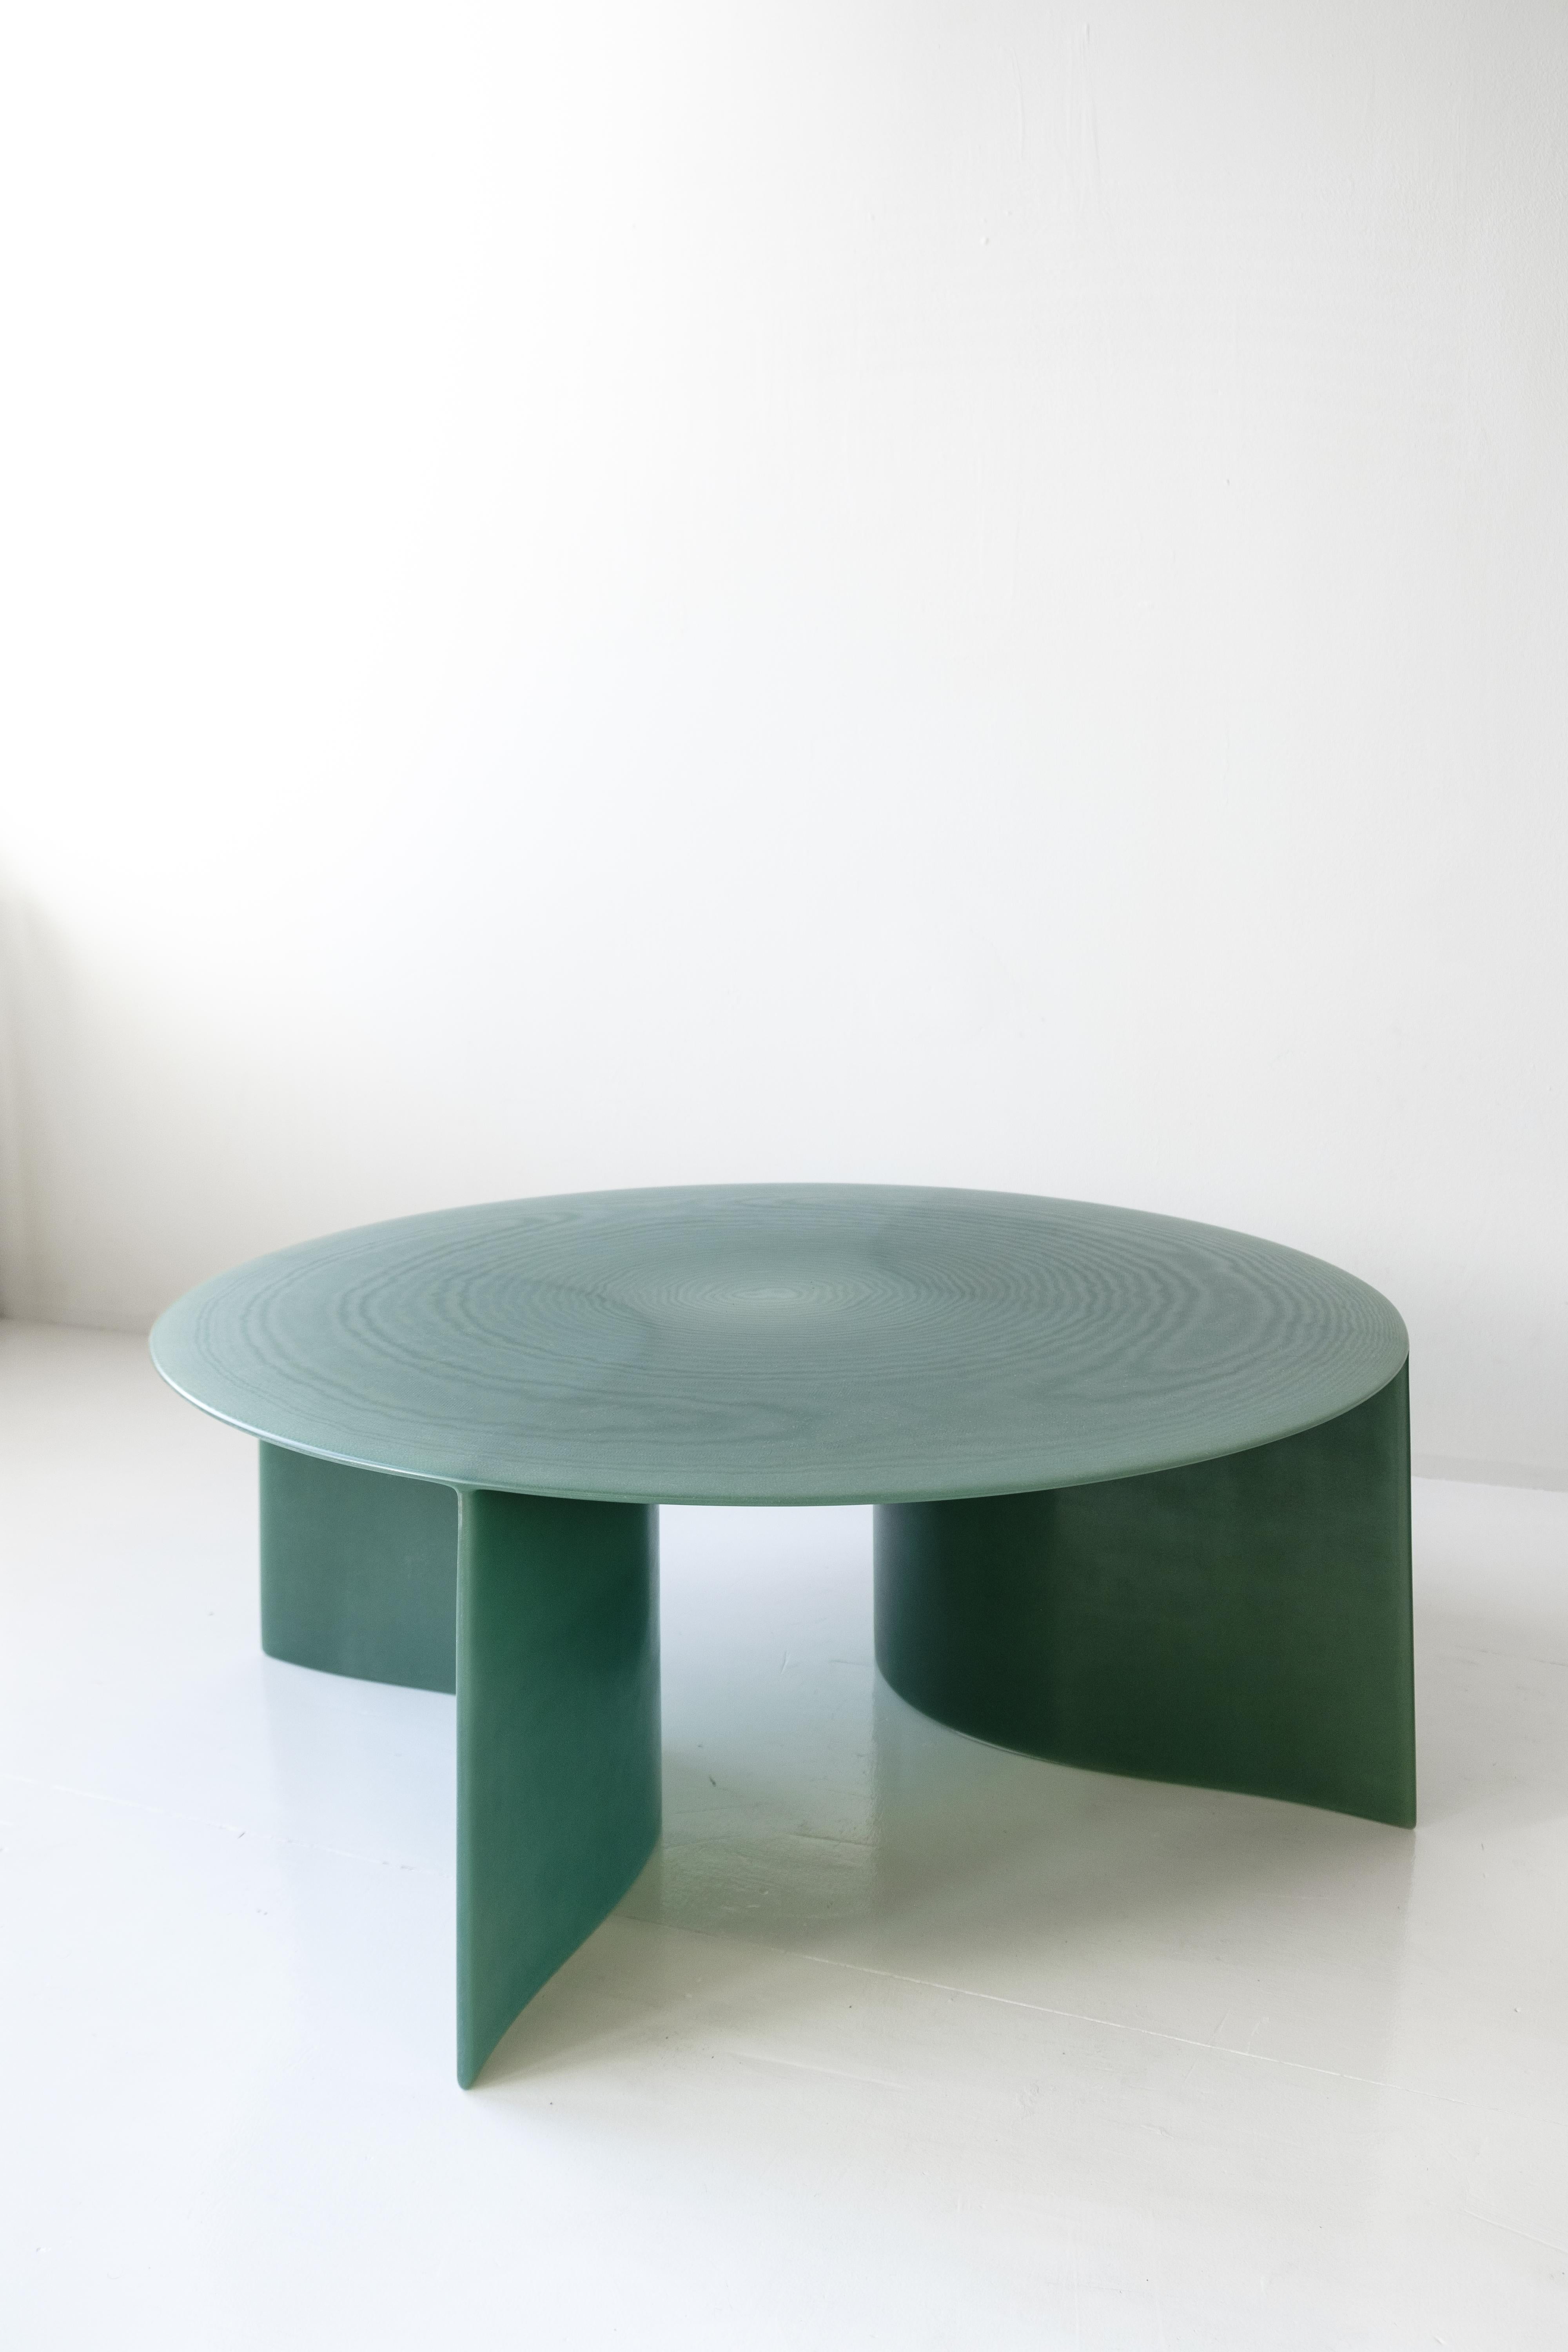 Contemporary Grünes Fiberglas, New Wave Couchtisch Rund 120cm, von Lukas Cober 6